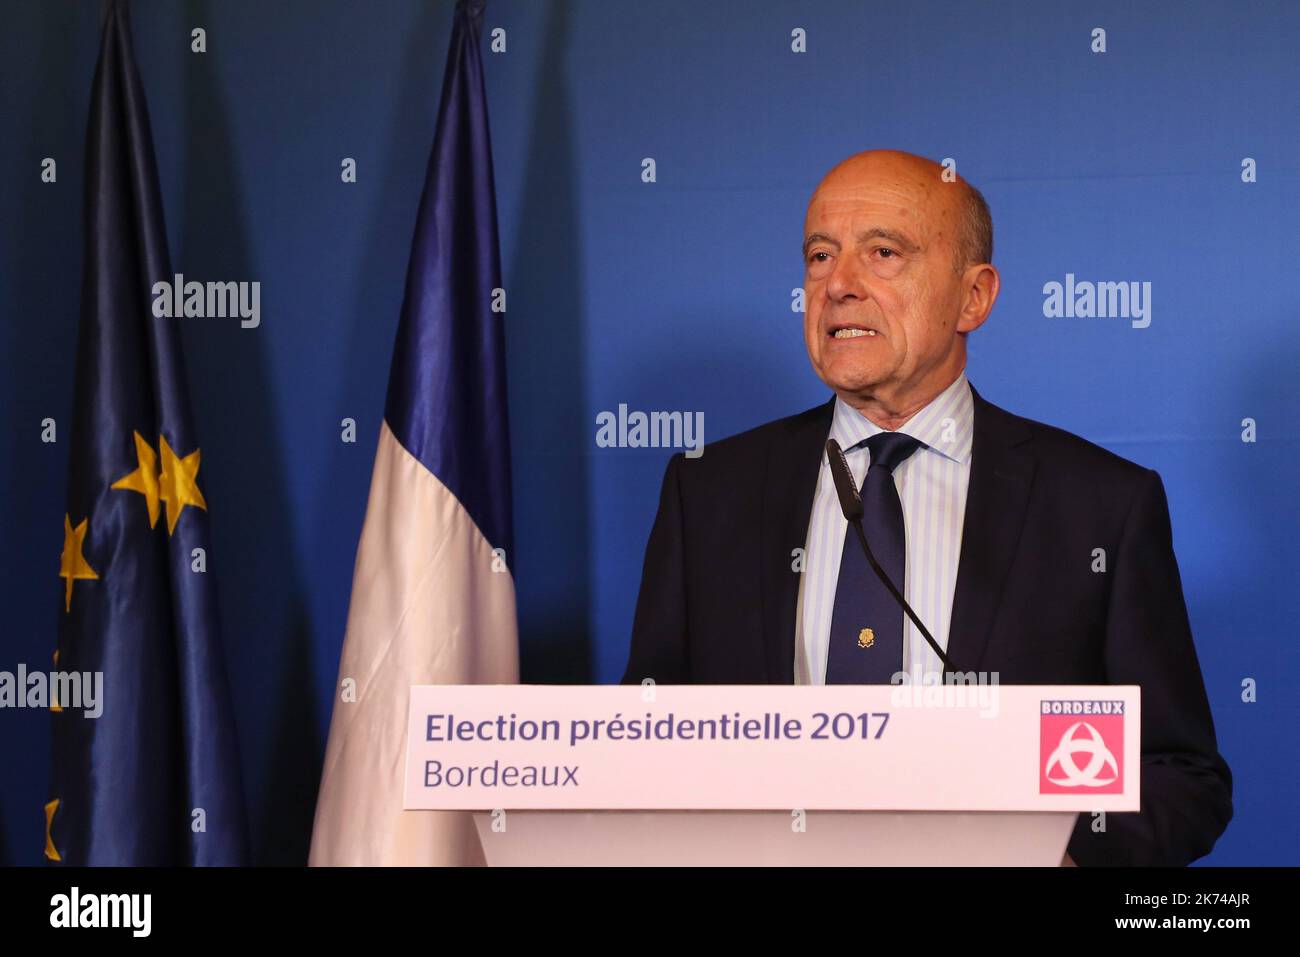 Premier tour des élections présidentielles françaises 2017 Alain Juppé prononce un discours Banque D'Images